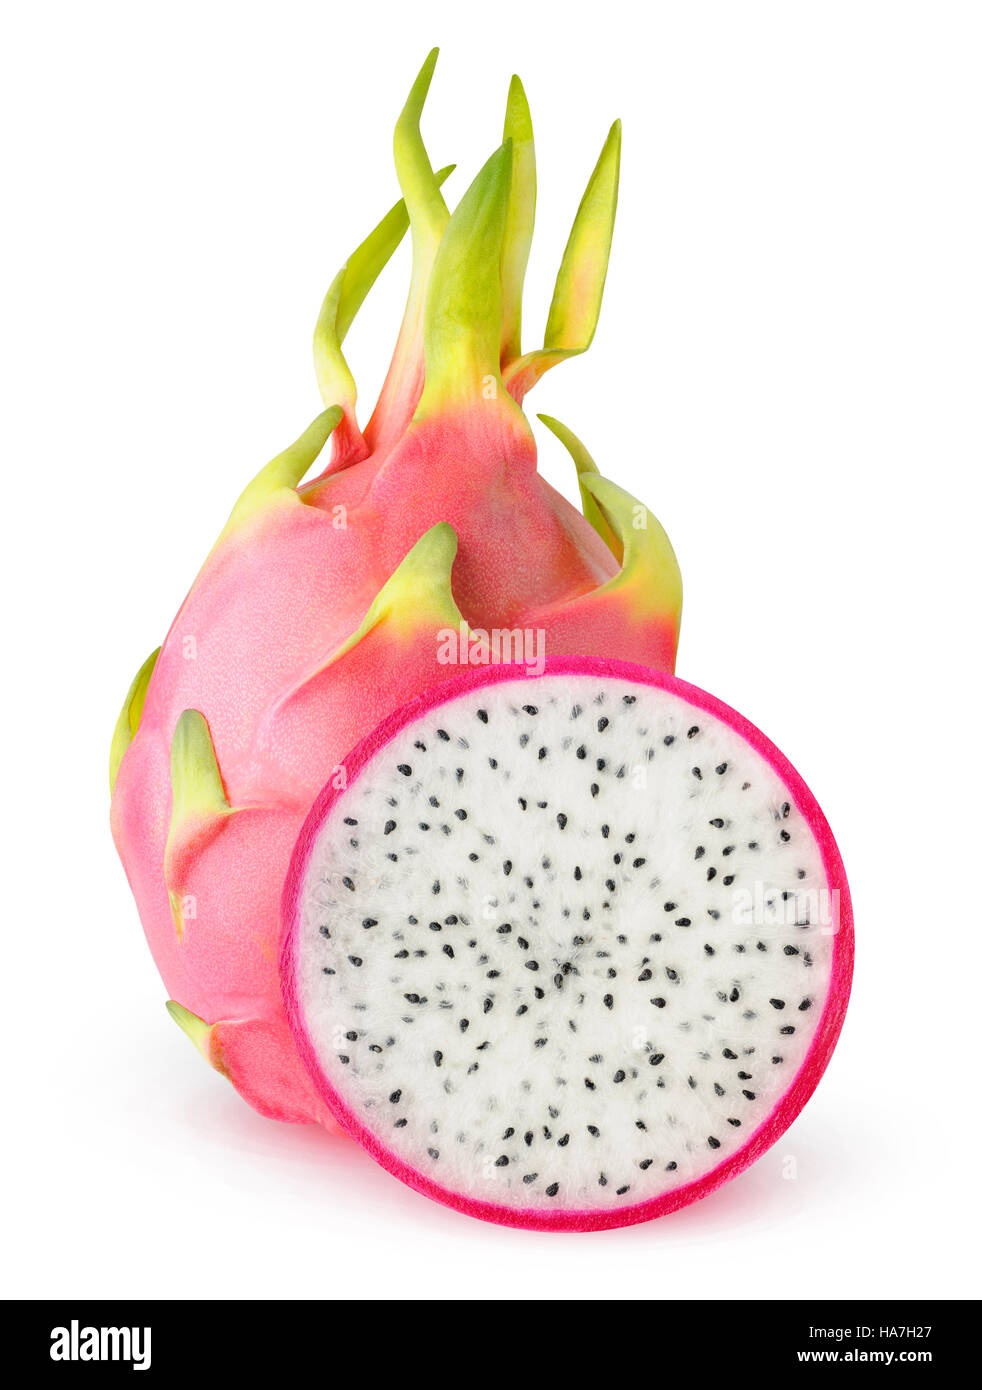 Dragonfruit isolés. Couper les fruits du dragon (pitaya) isolé sur fond blanc avec clipping path Banque D'Images